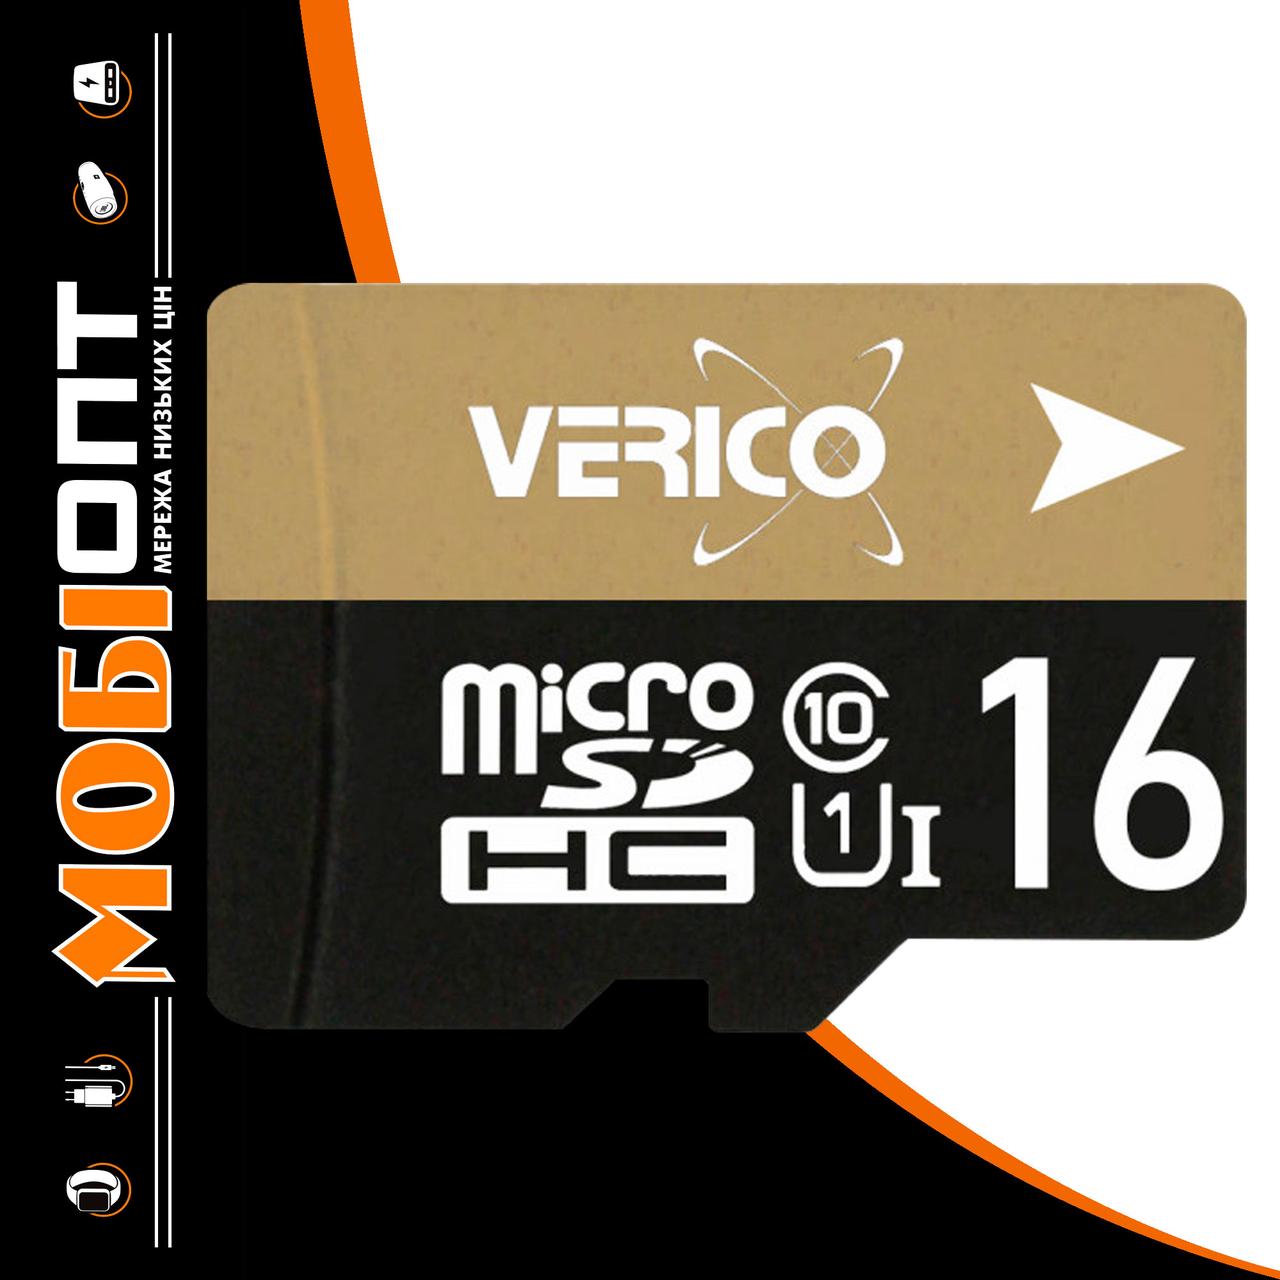 Micro SD 16GB/10 class Verico